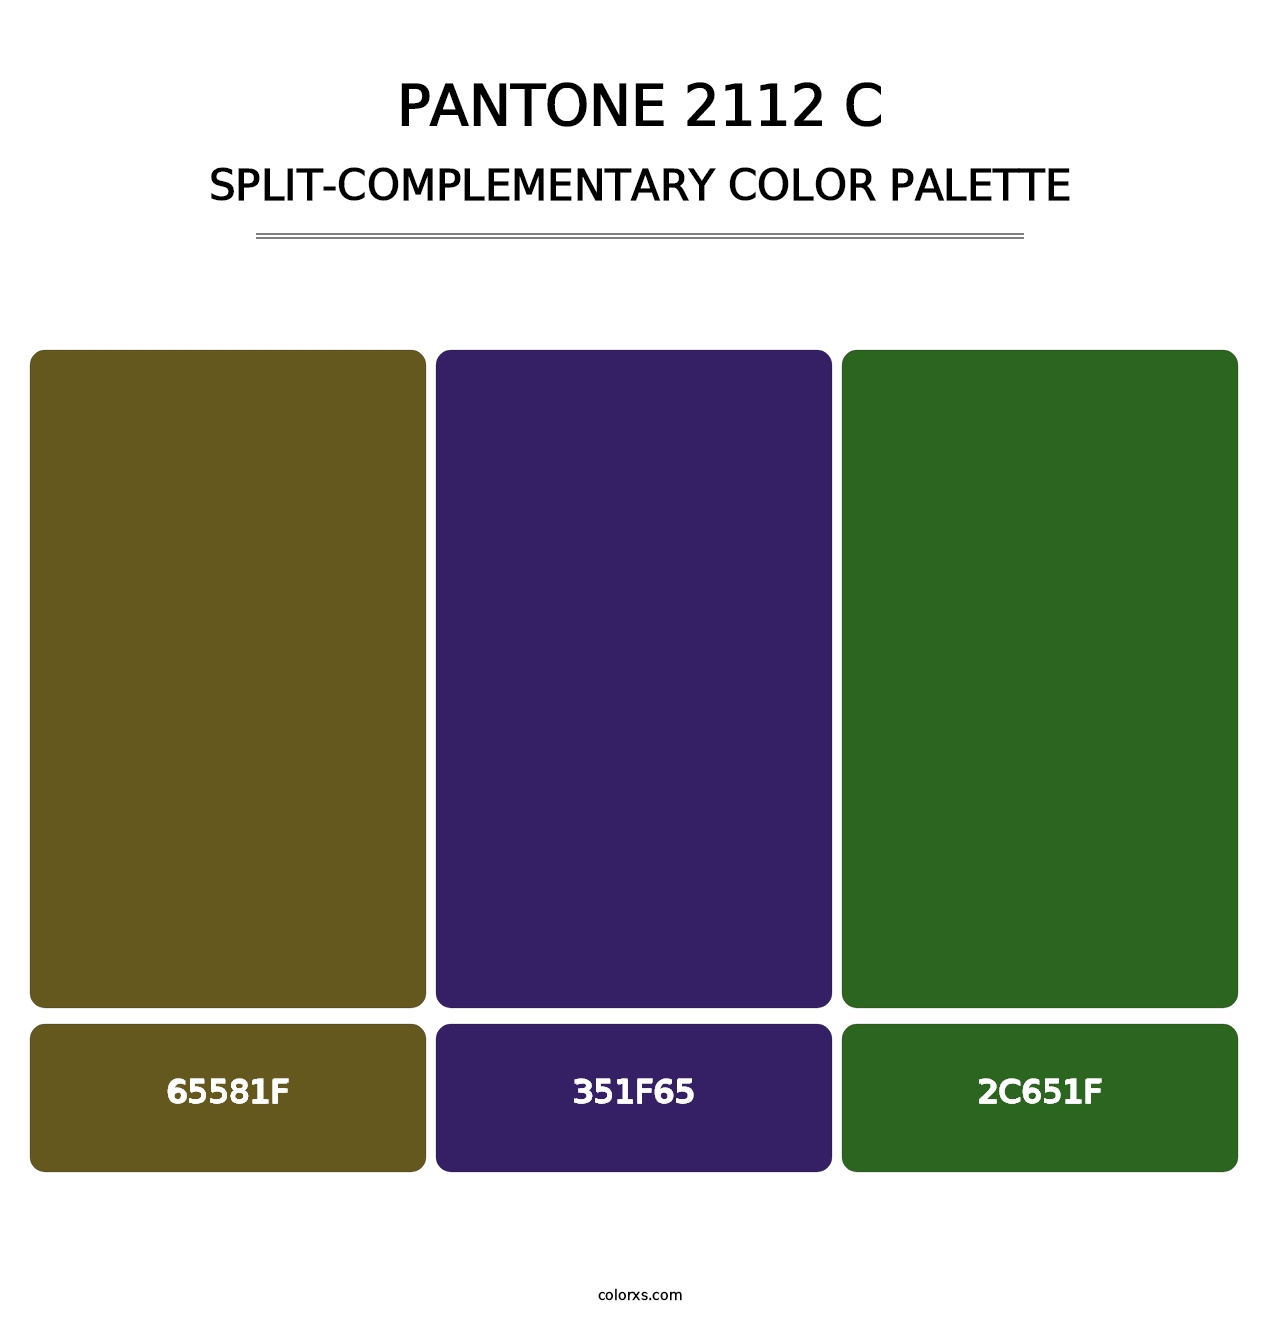 PANTONE 2112 C - Split-Complementary Color Palette